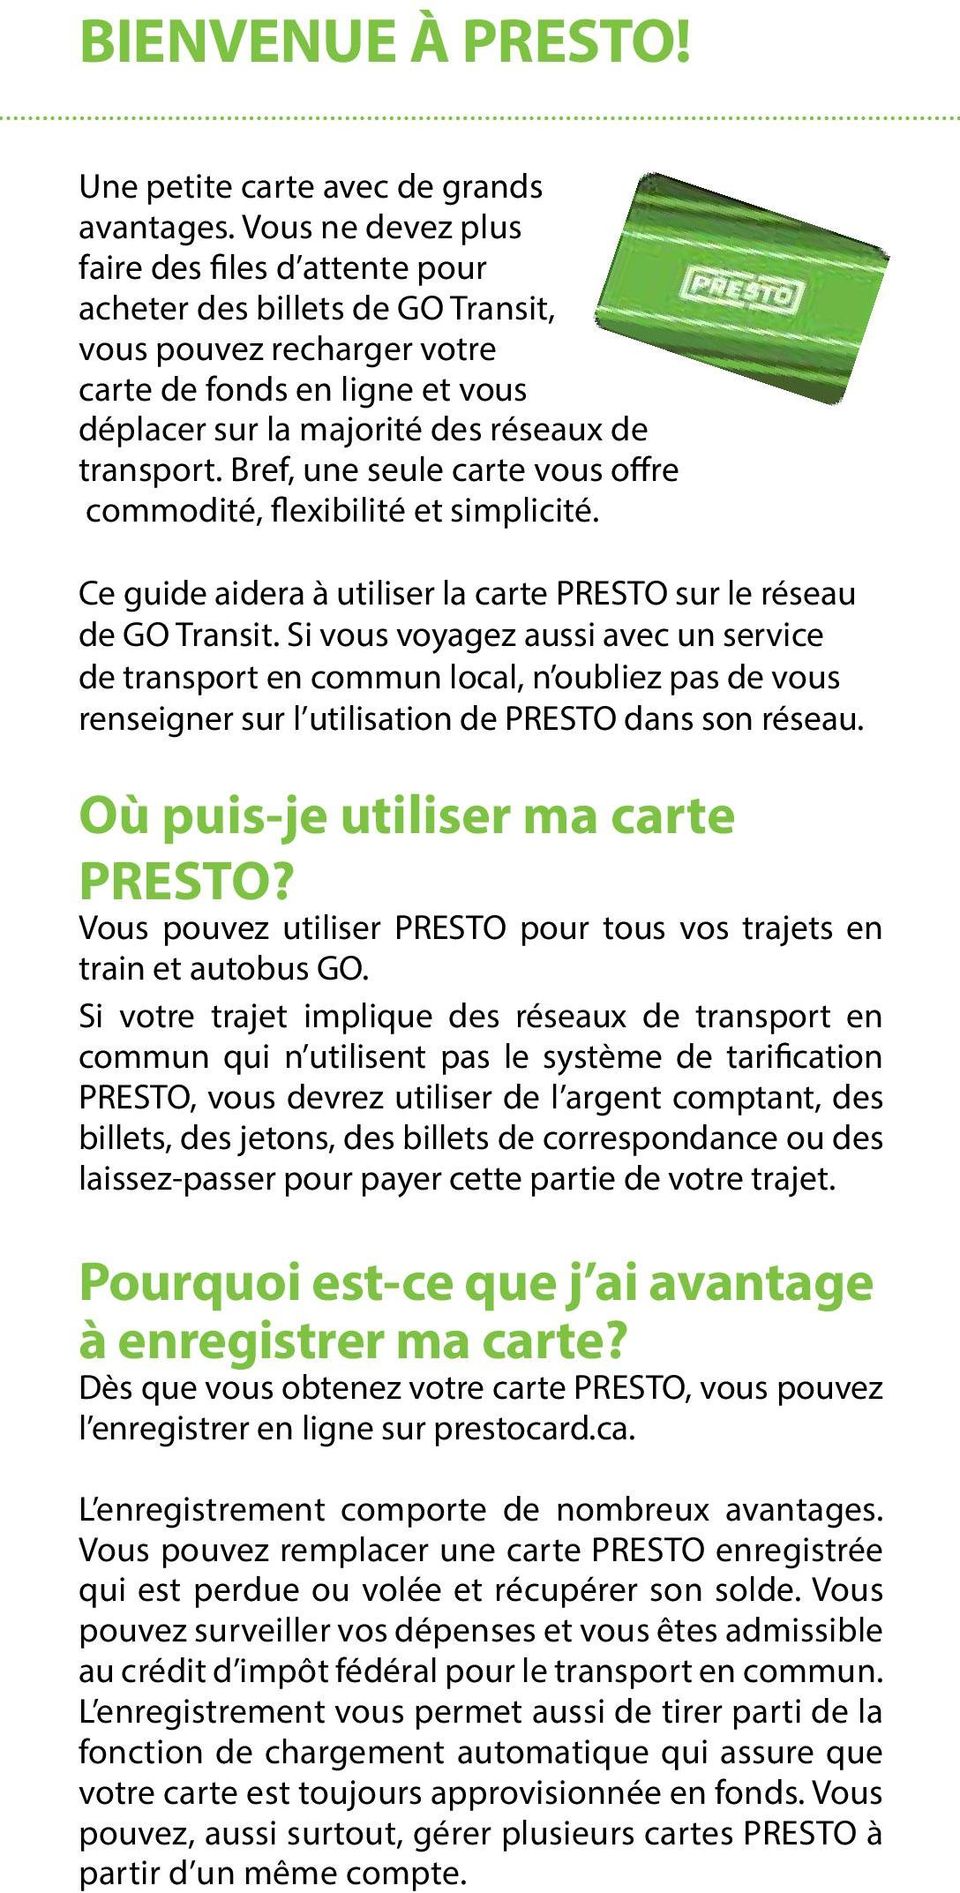 Bref, une seule carte vous offre commodité, flexibilité et simplicité. Ce guide aidera à utiliser la carte PRESTO sur le réseau de GO Transit.